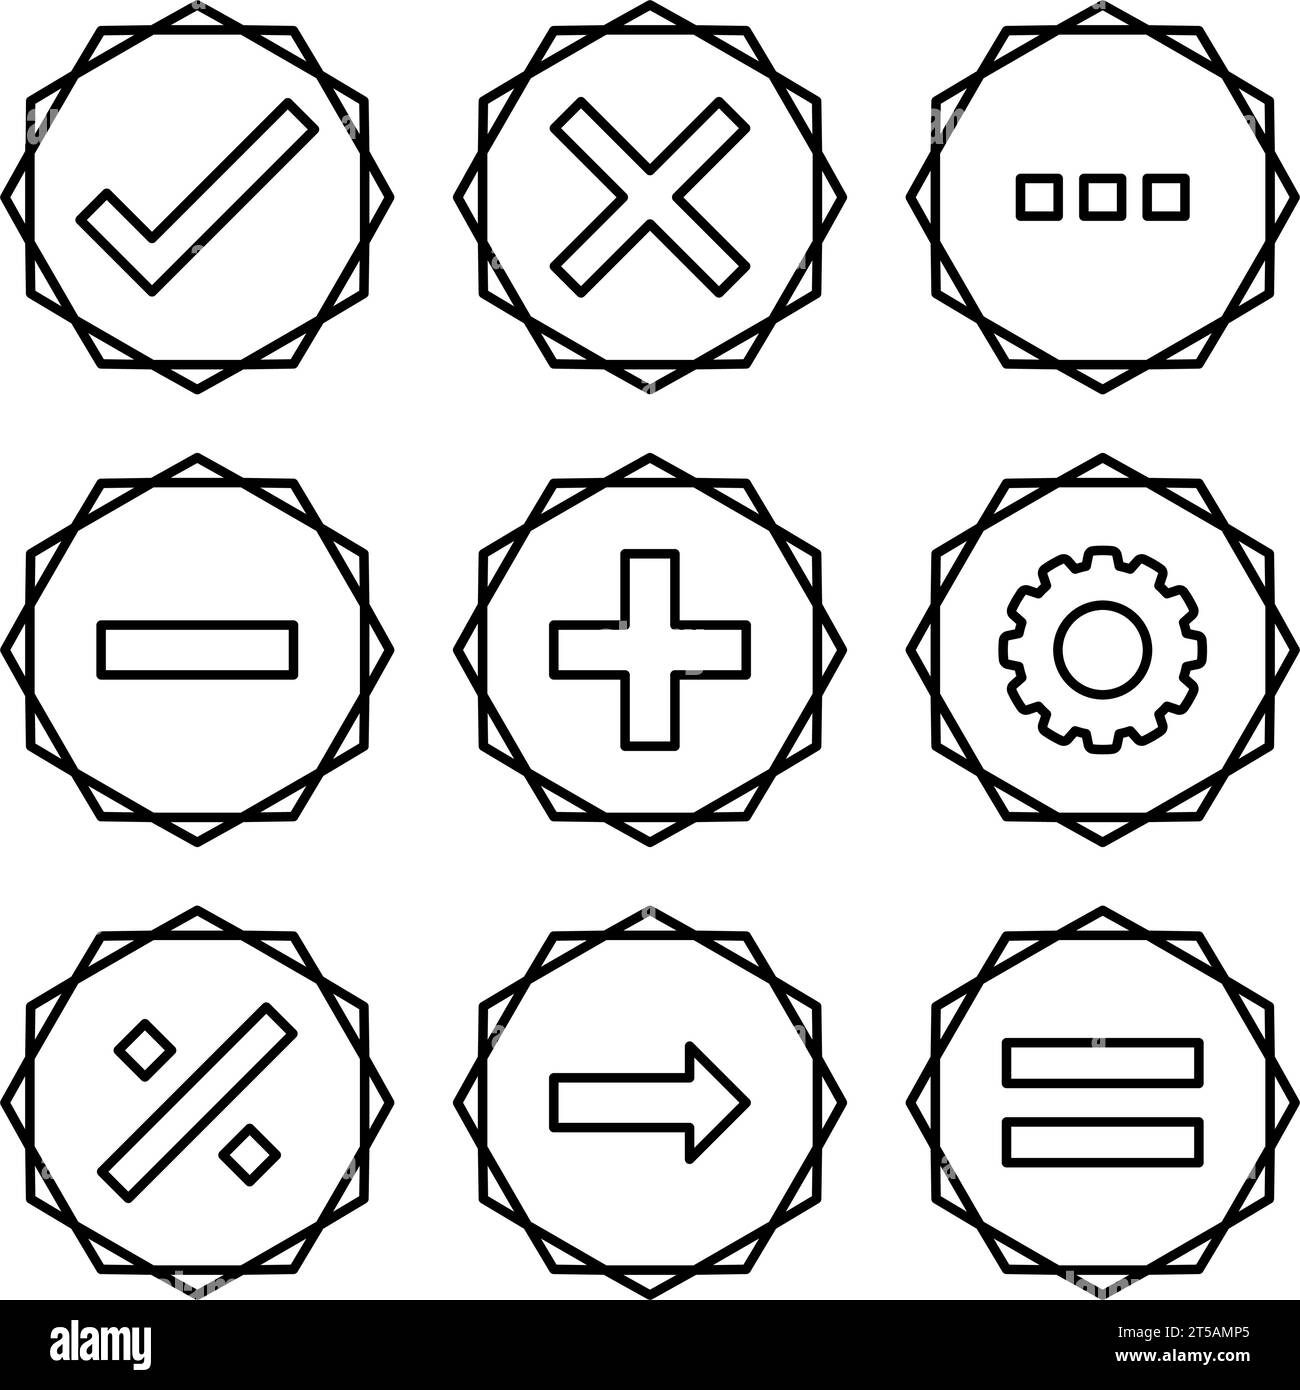 Figura illustrata matematica destra errata corretta serie di icone con profilo a zig-zag corretto Illustrazione Vettoriale